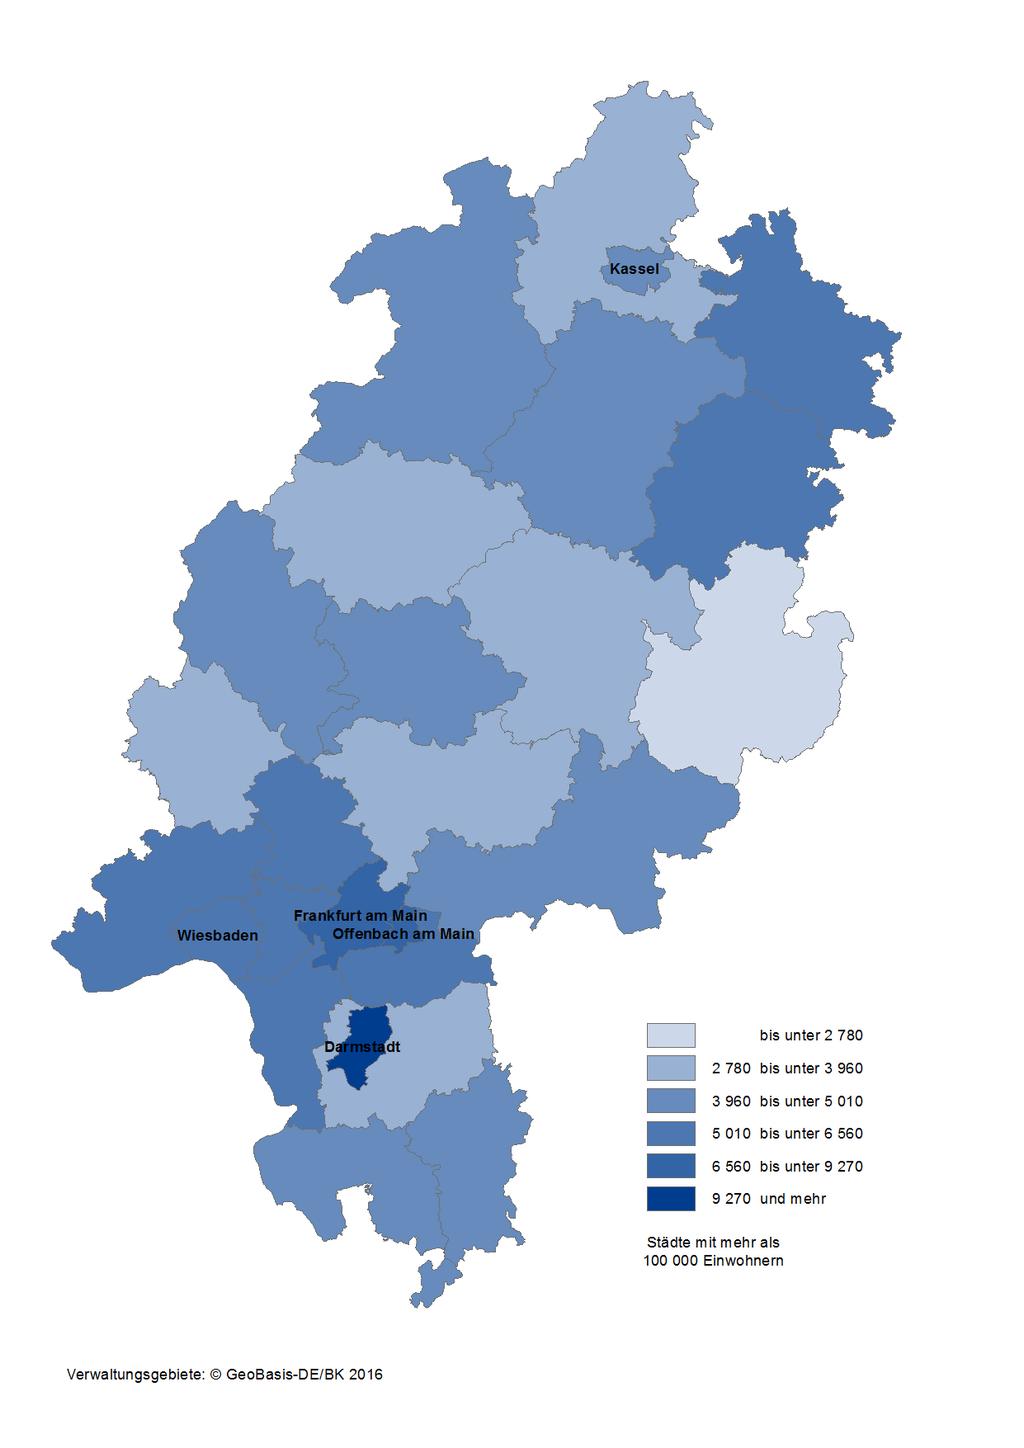 Karte 7: Integrierte kommunale Schulden der Kreisgebiete und kreisfreien Städte in Hessen am 31.12.